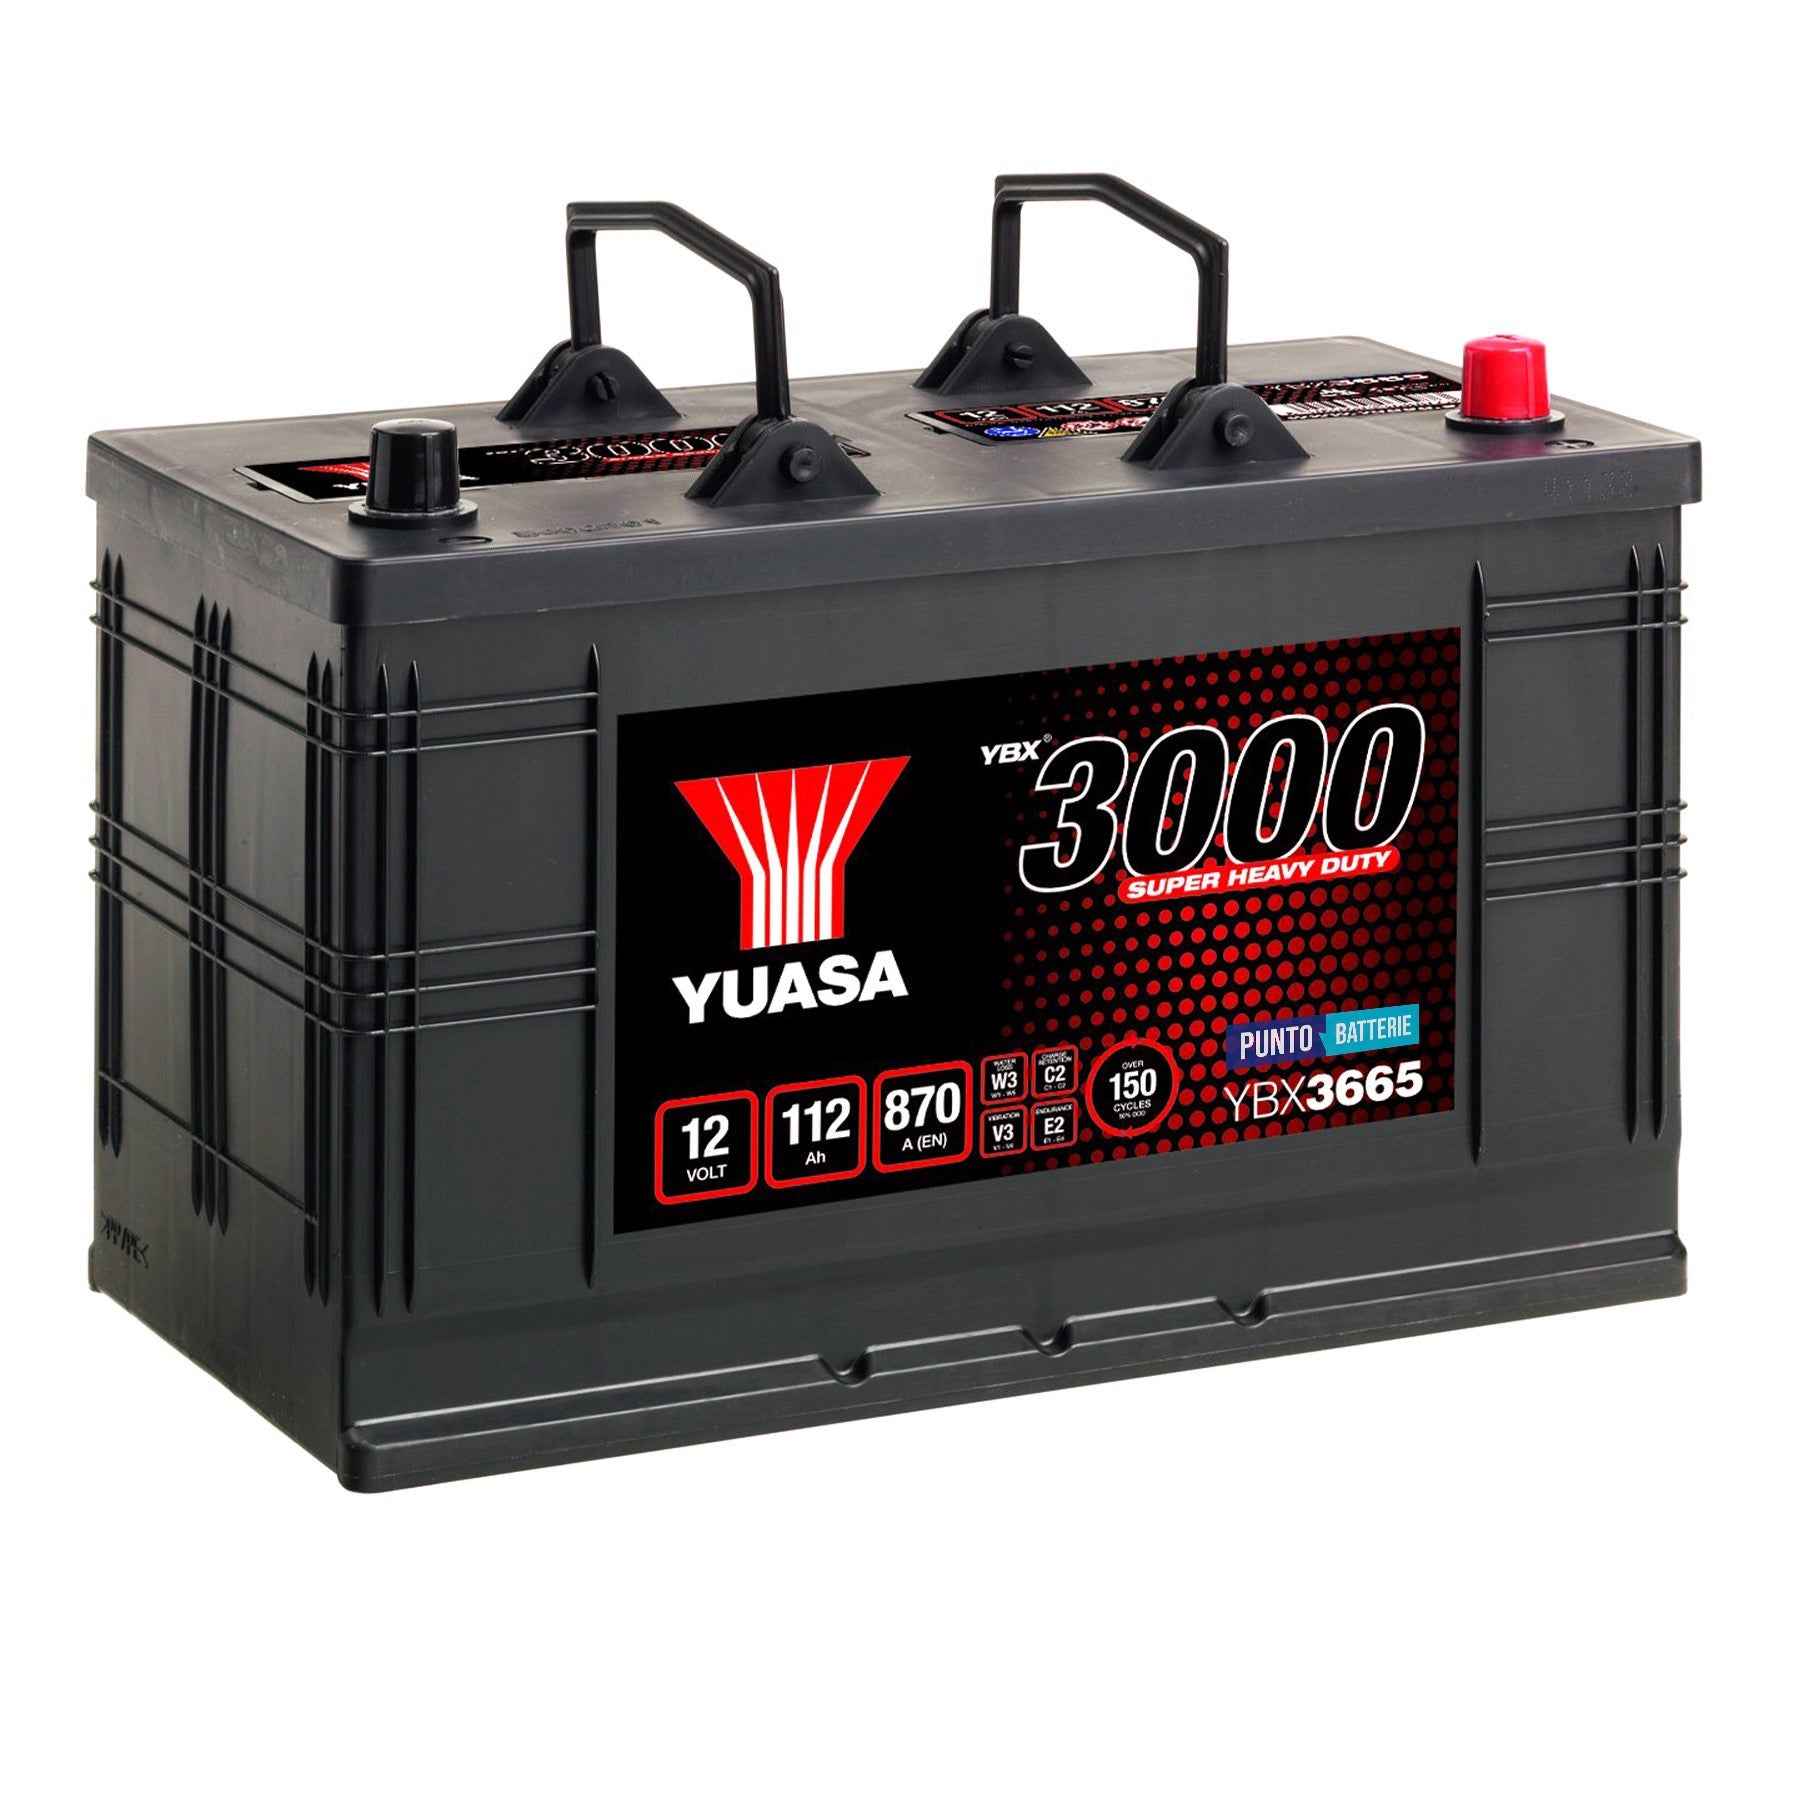 Batteria originale Yuasa YBX3000 YBX3665, dimensioni 346 x 173 x 234, polo positivo a destra, 12 volt, 112 amperora, 870 ampere. Batteria per camion e veicoli pesanti.